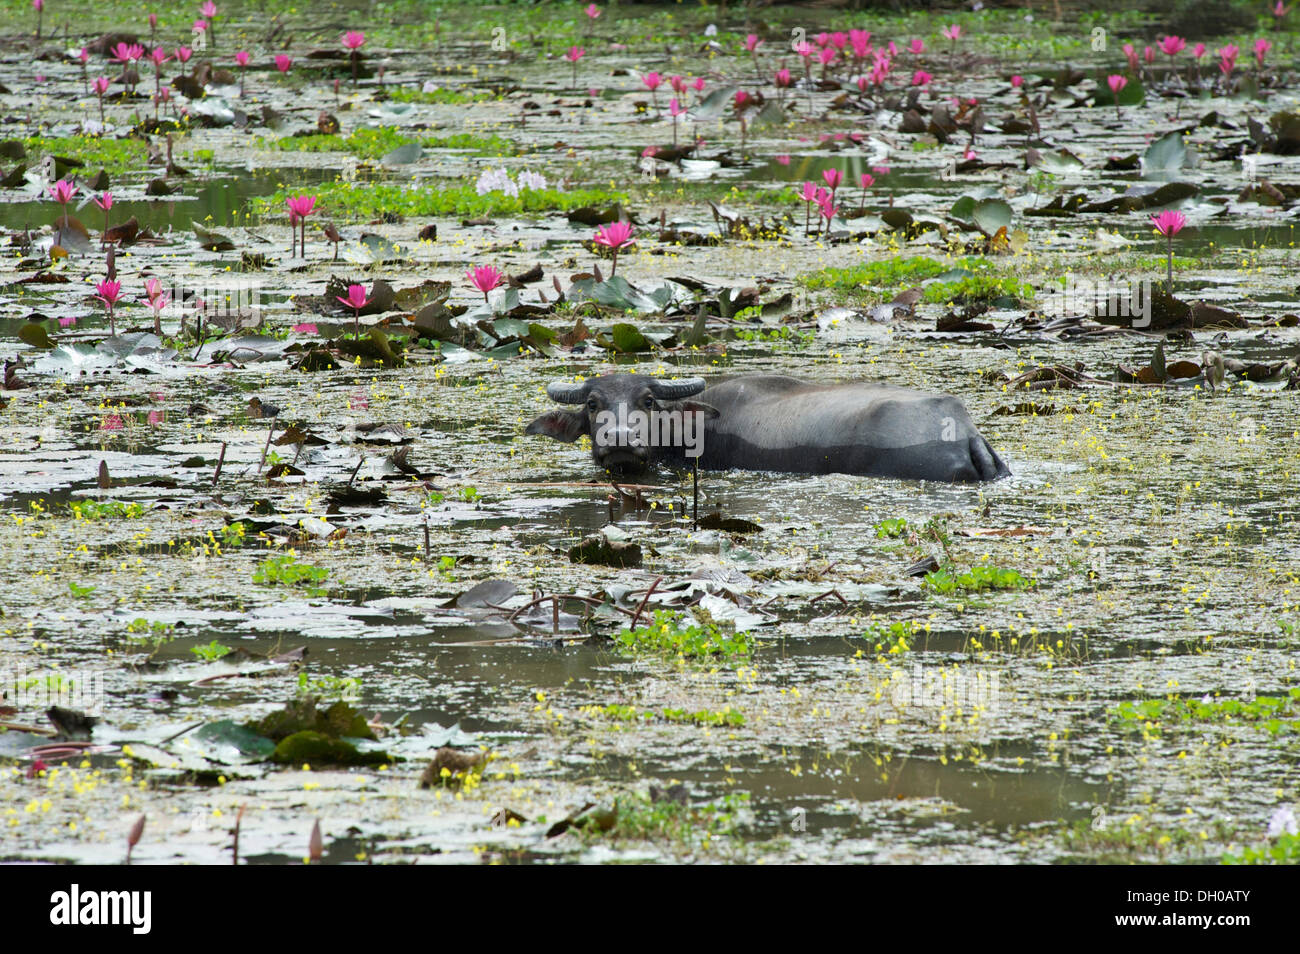 Water Buffalo (Bubalus arnee) in a moat, Siem Reap, Siem Reap, Siem Reap Province, Cambodia Stock Photo